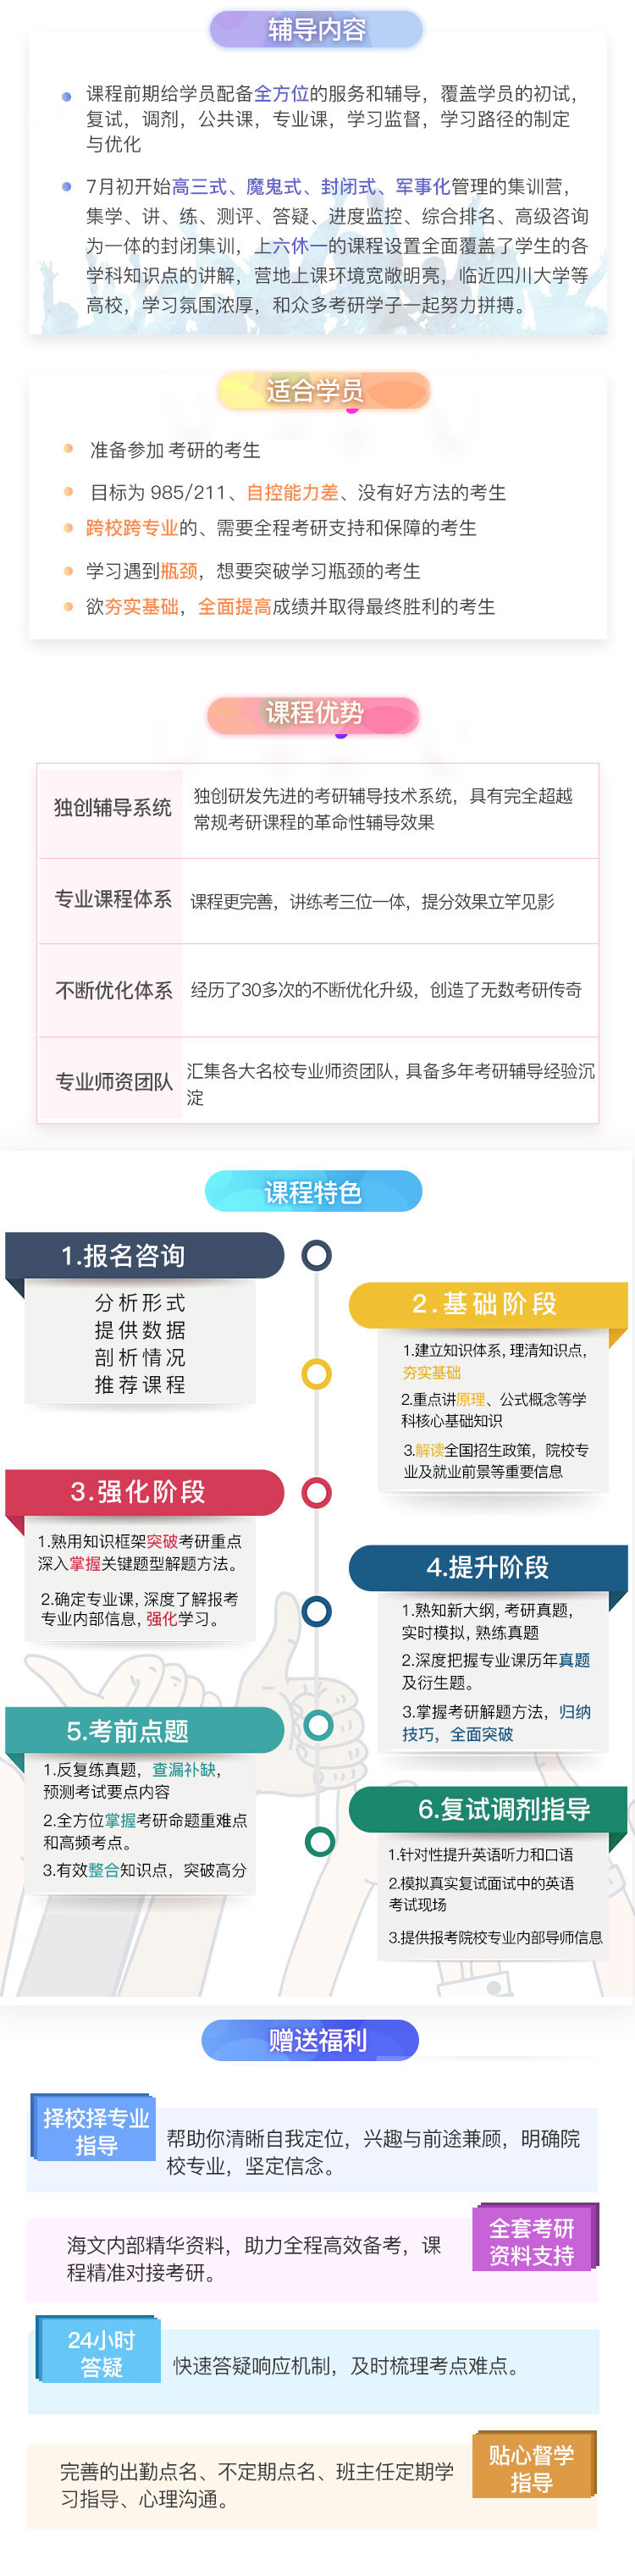 四川医学考研半年超级特训营课程（课程图示）